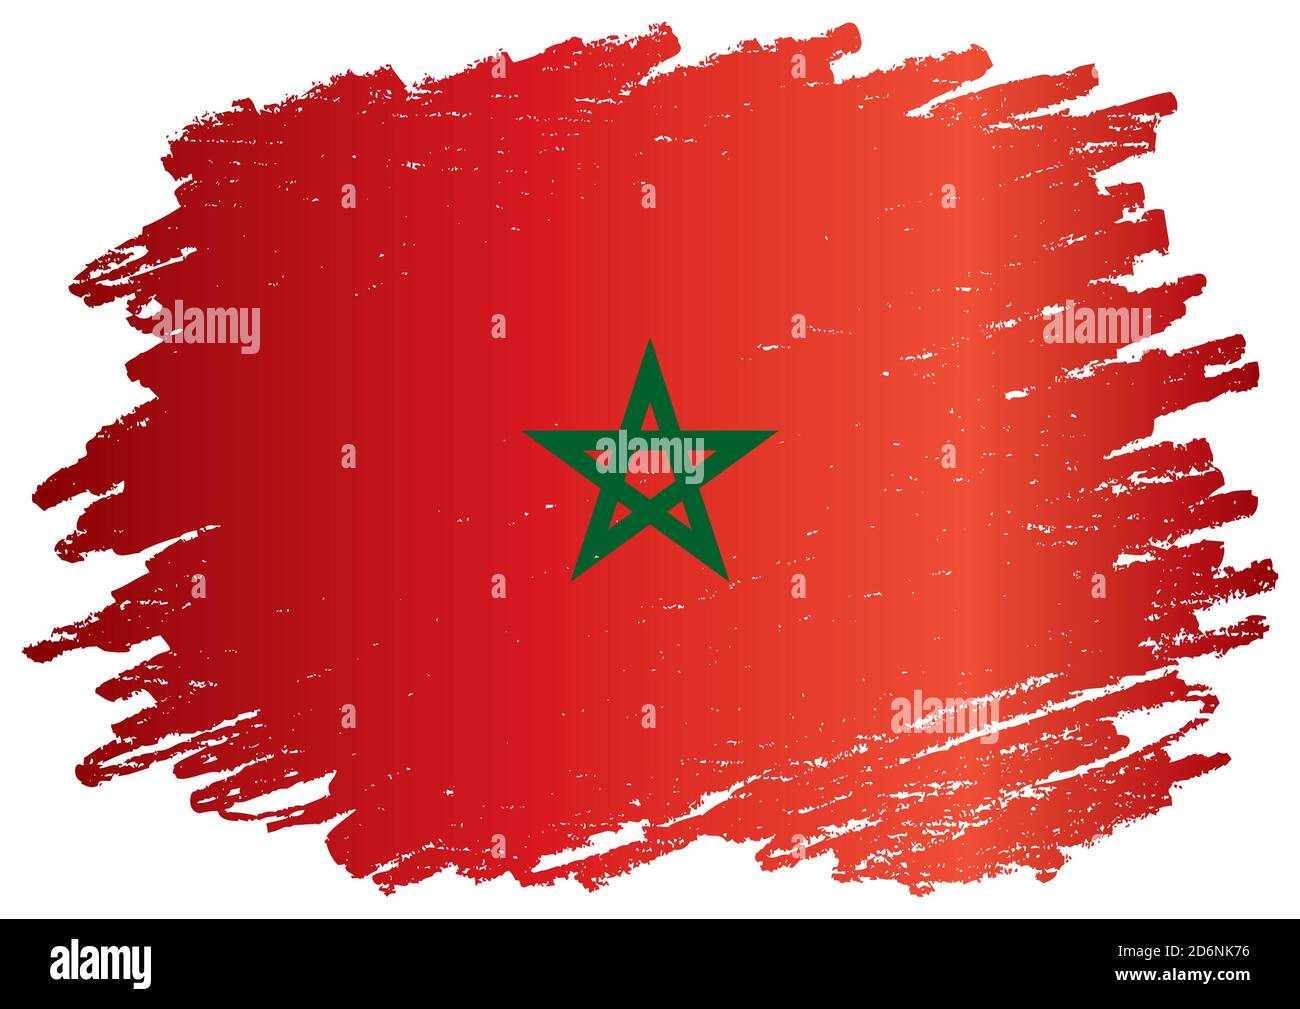 Drapeau du Maroc, Royaume du Maroc. Illustration vectorielle colorée et lumineuse Illustration de Vecteur